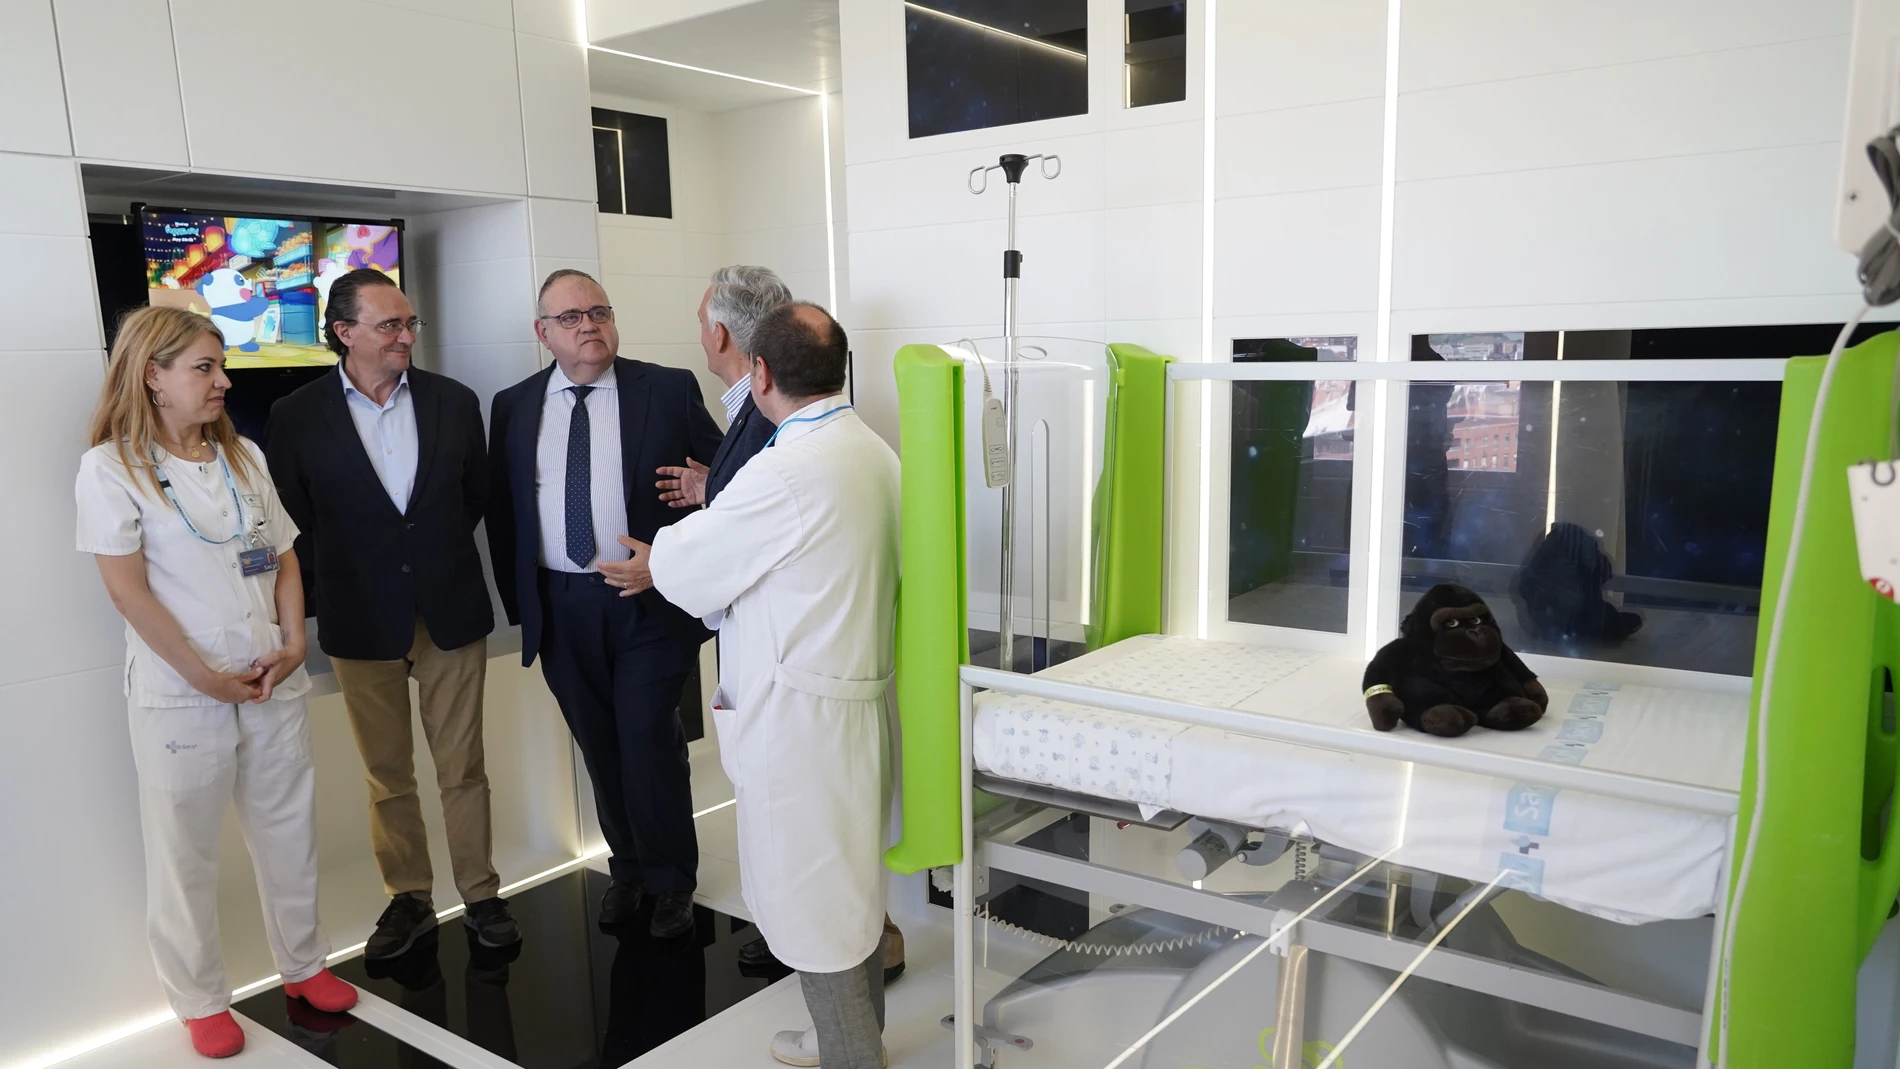 El consejero de Sanidad, Alejandro Vázquez, visita la habitación espacial junto a Artemio Domínguez, presidente de la AECC Valladolid, y el gerente del Hospital Clínico de Valladolid, José Antonio Arranz.